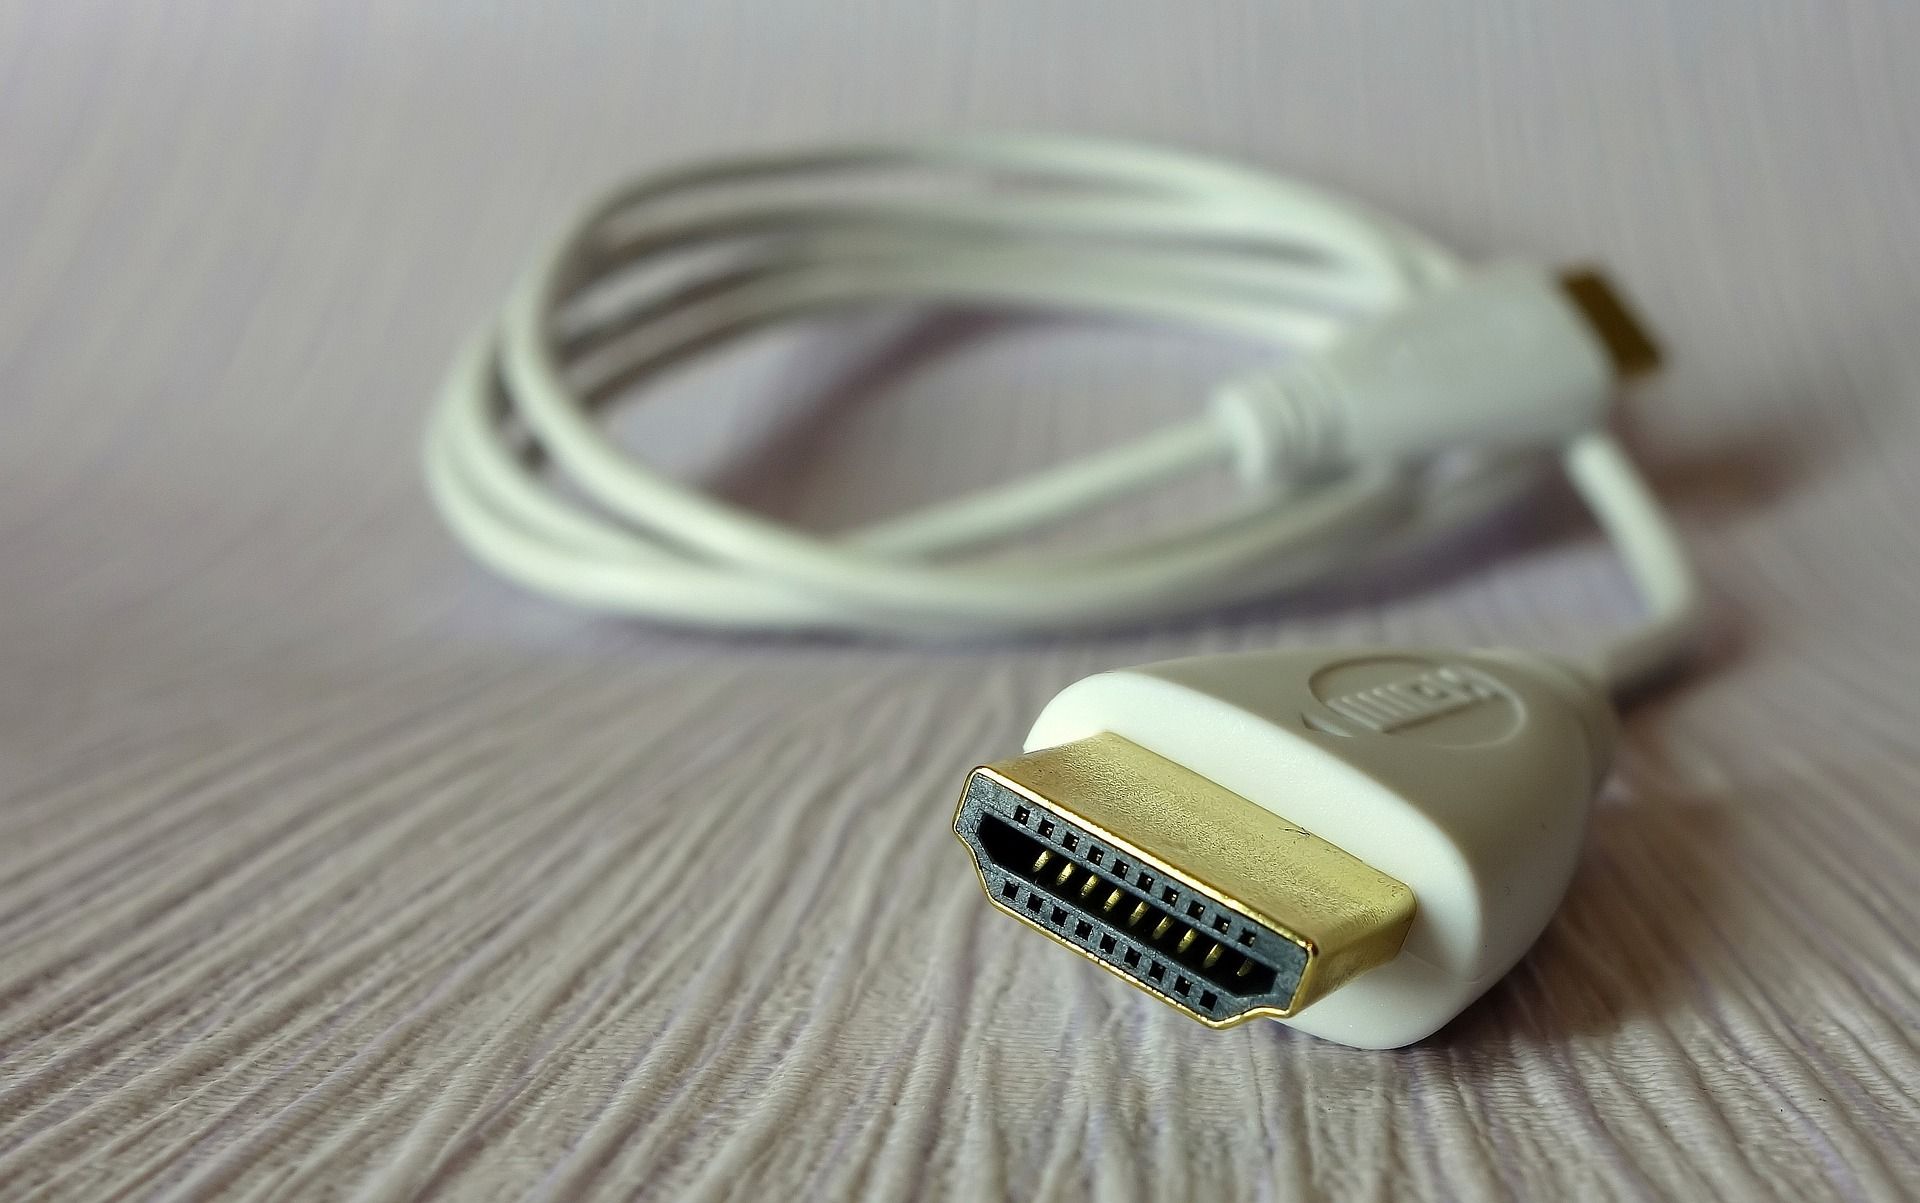 White HDMI Cable - Come funzionano gli splitter HDMI e possono ridurre l’ingombro dei cavi?